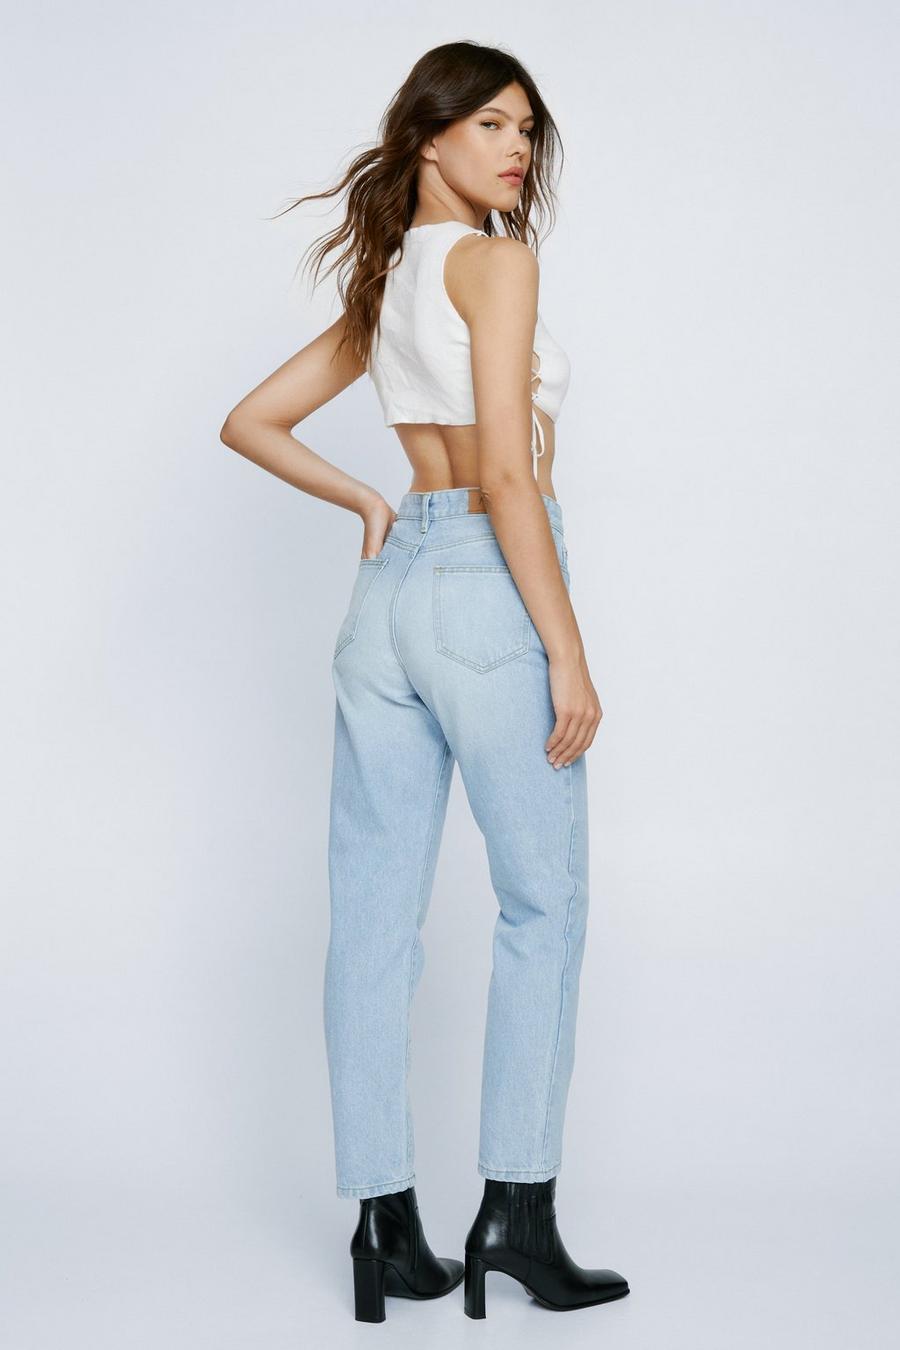 Women's Jeans, Denim Jeans